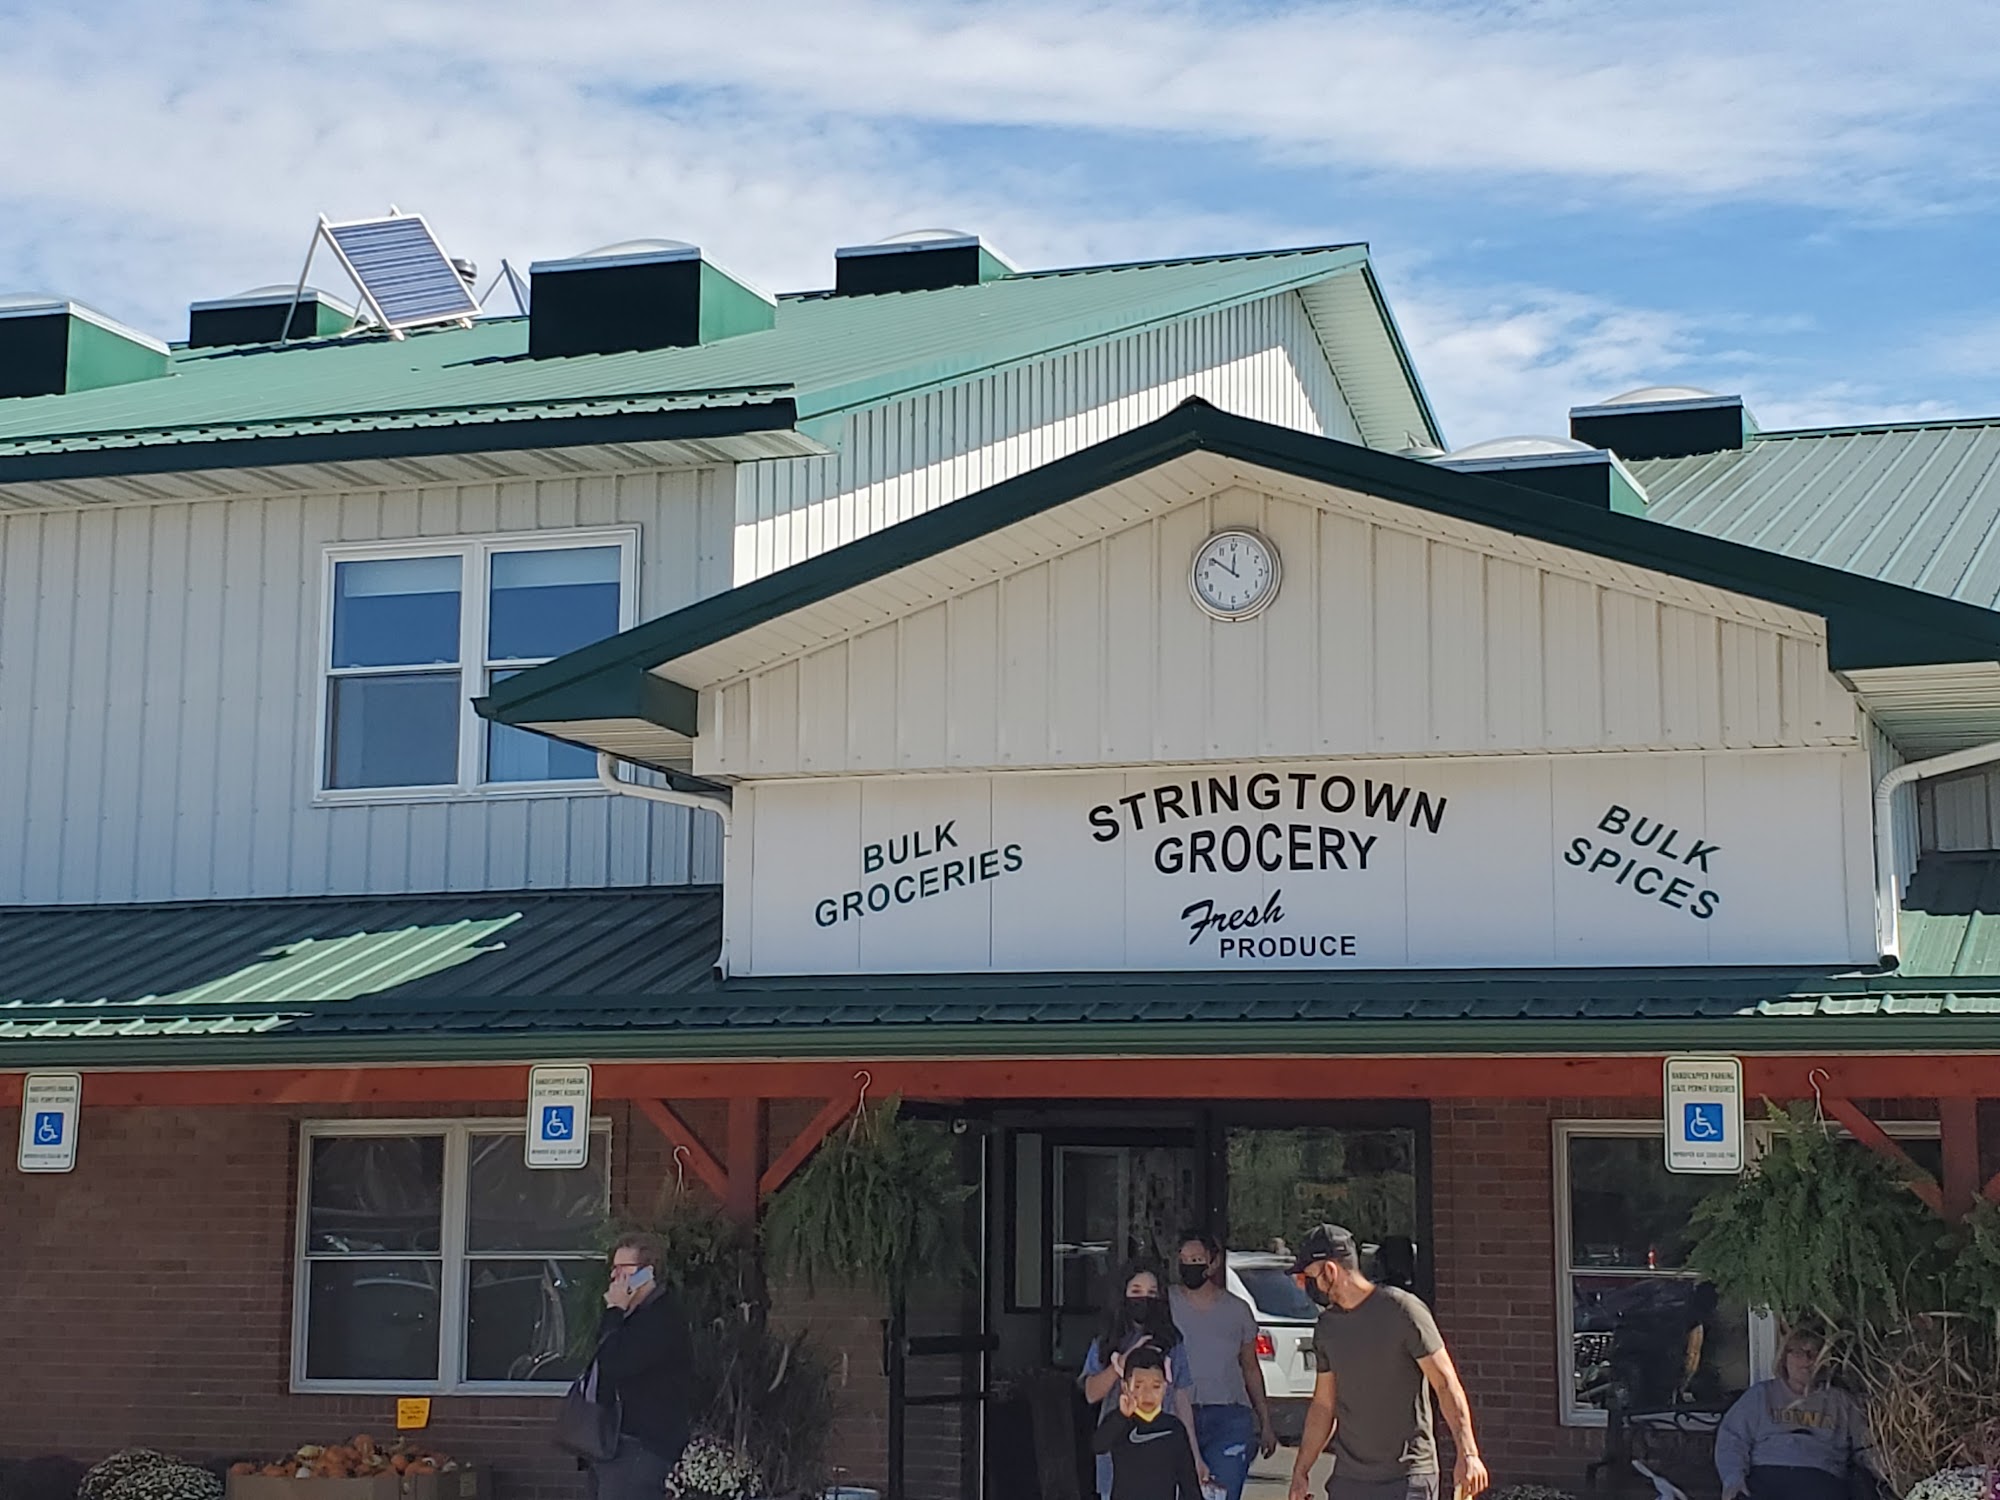 Stringtown Grocery